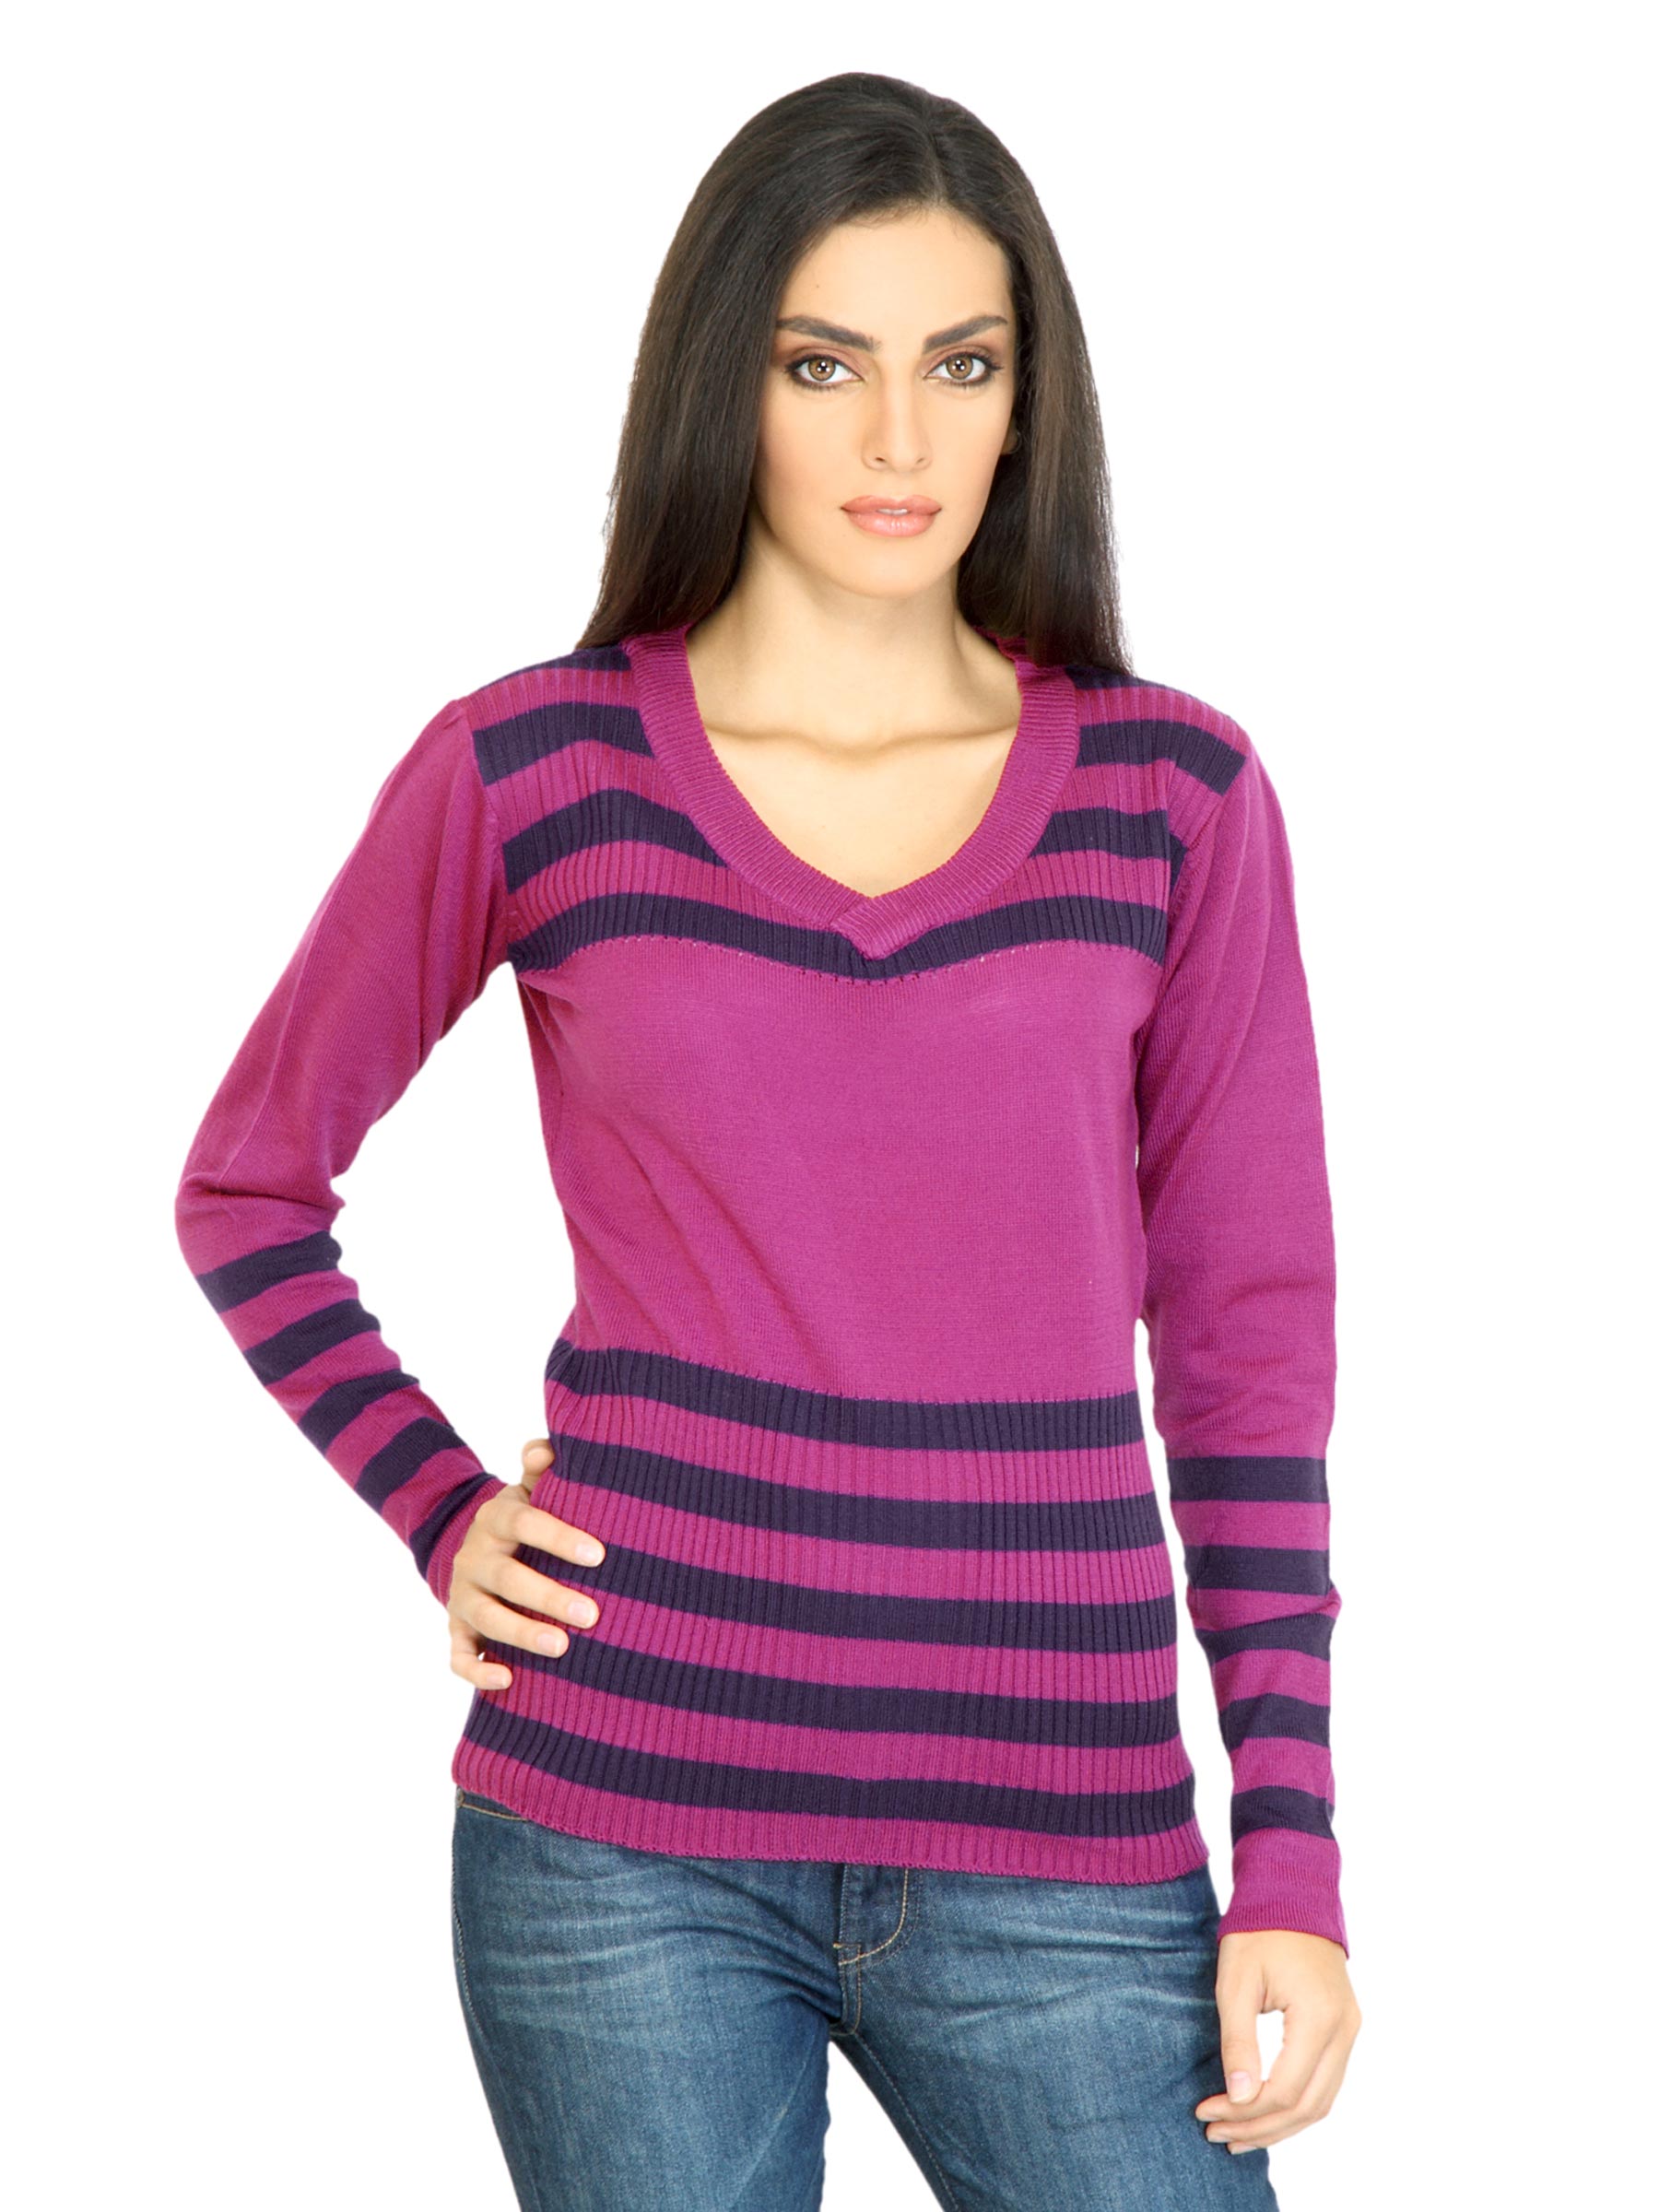 Jealous 21 Women Stripes Purple Sweater